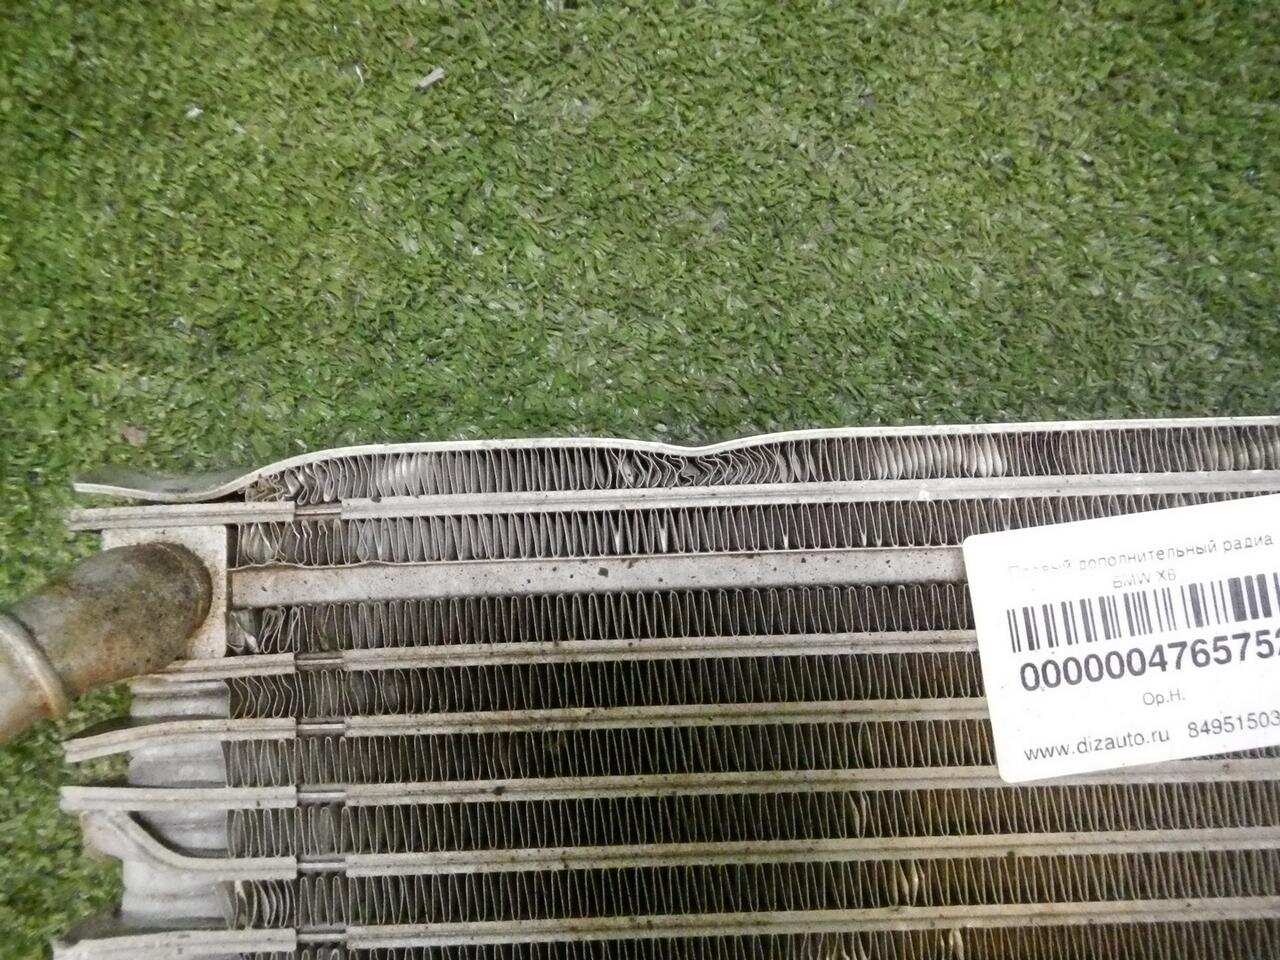 Радиатор масляный вынесенный BMW X5M F95 (2019-Н.В.) 17218097175 0000004765752